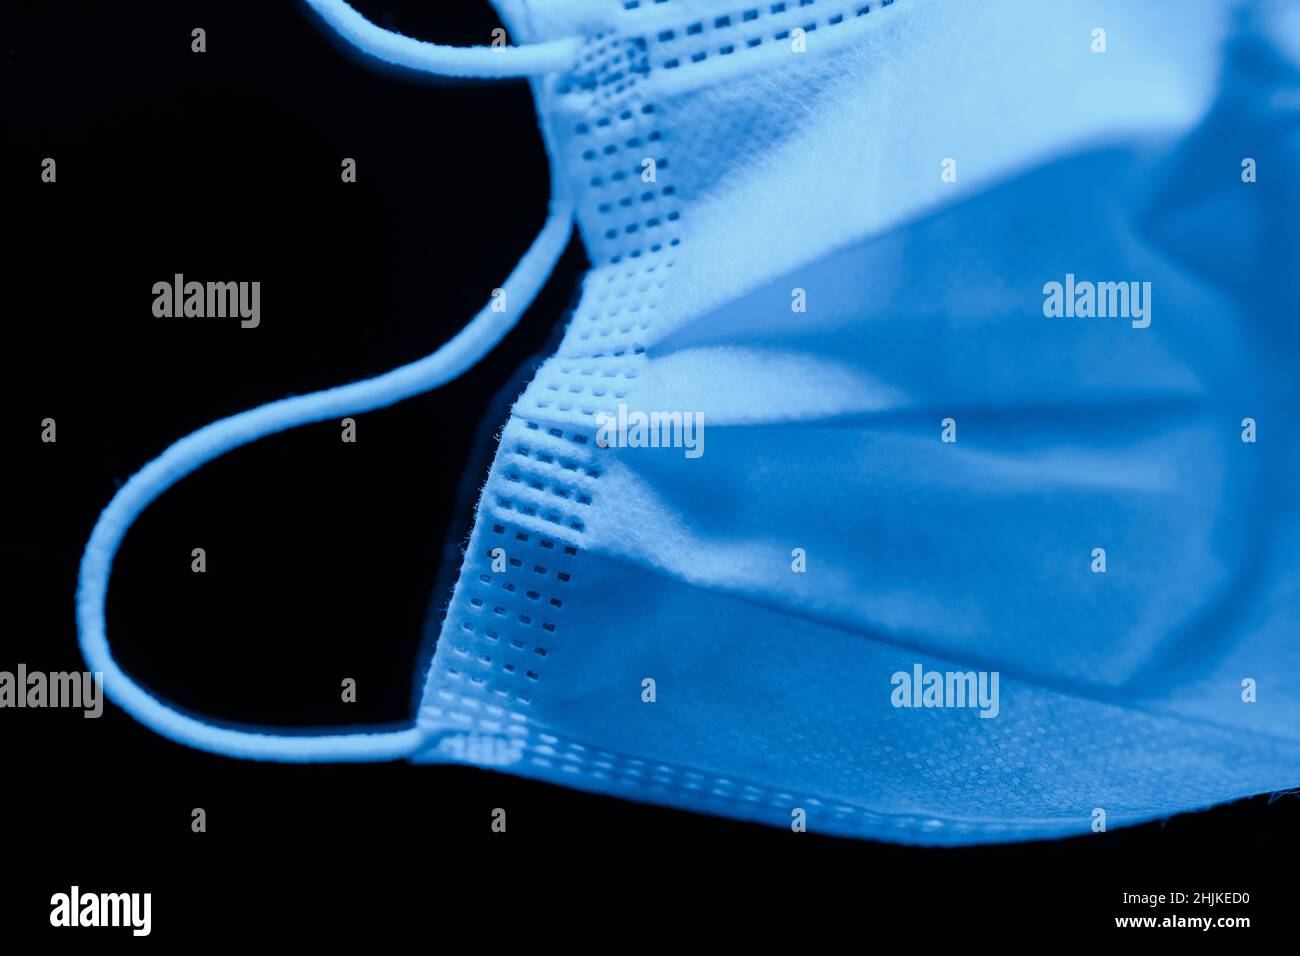 Chirurgische Maske in tiefen ultramarinen Tönen auf dunklem Hintergrund - Makroaufnahme Stockfoto